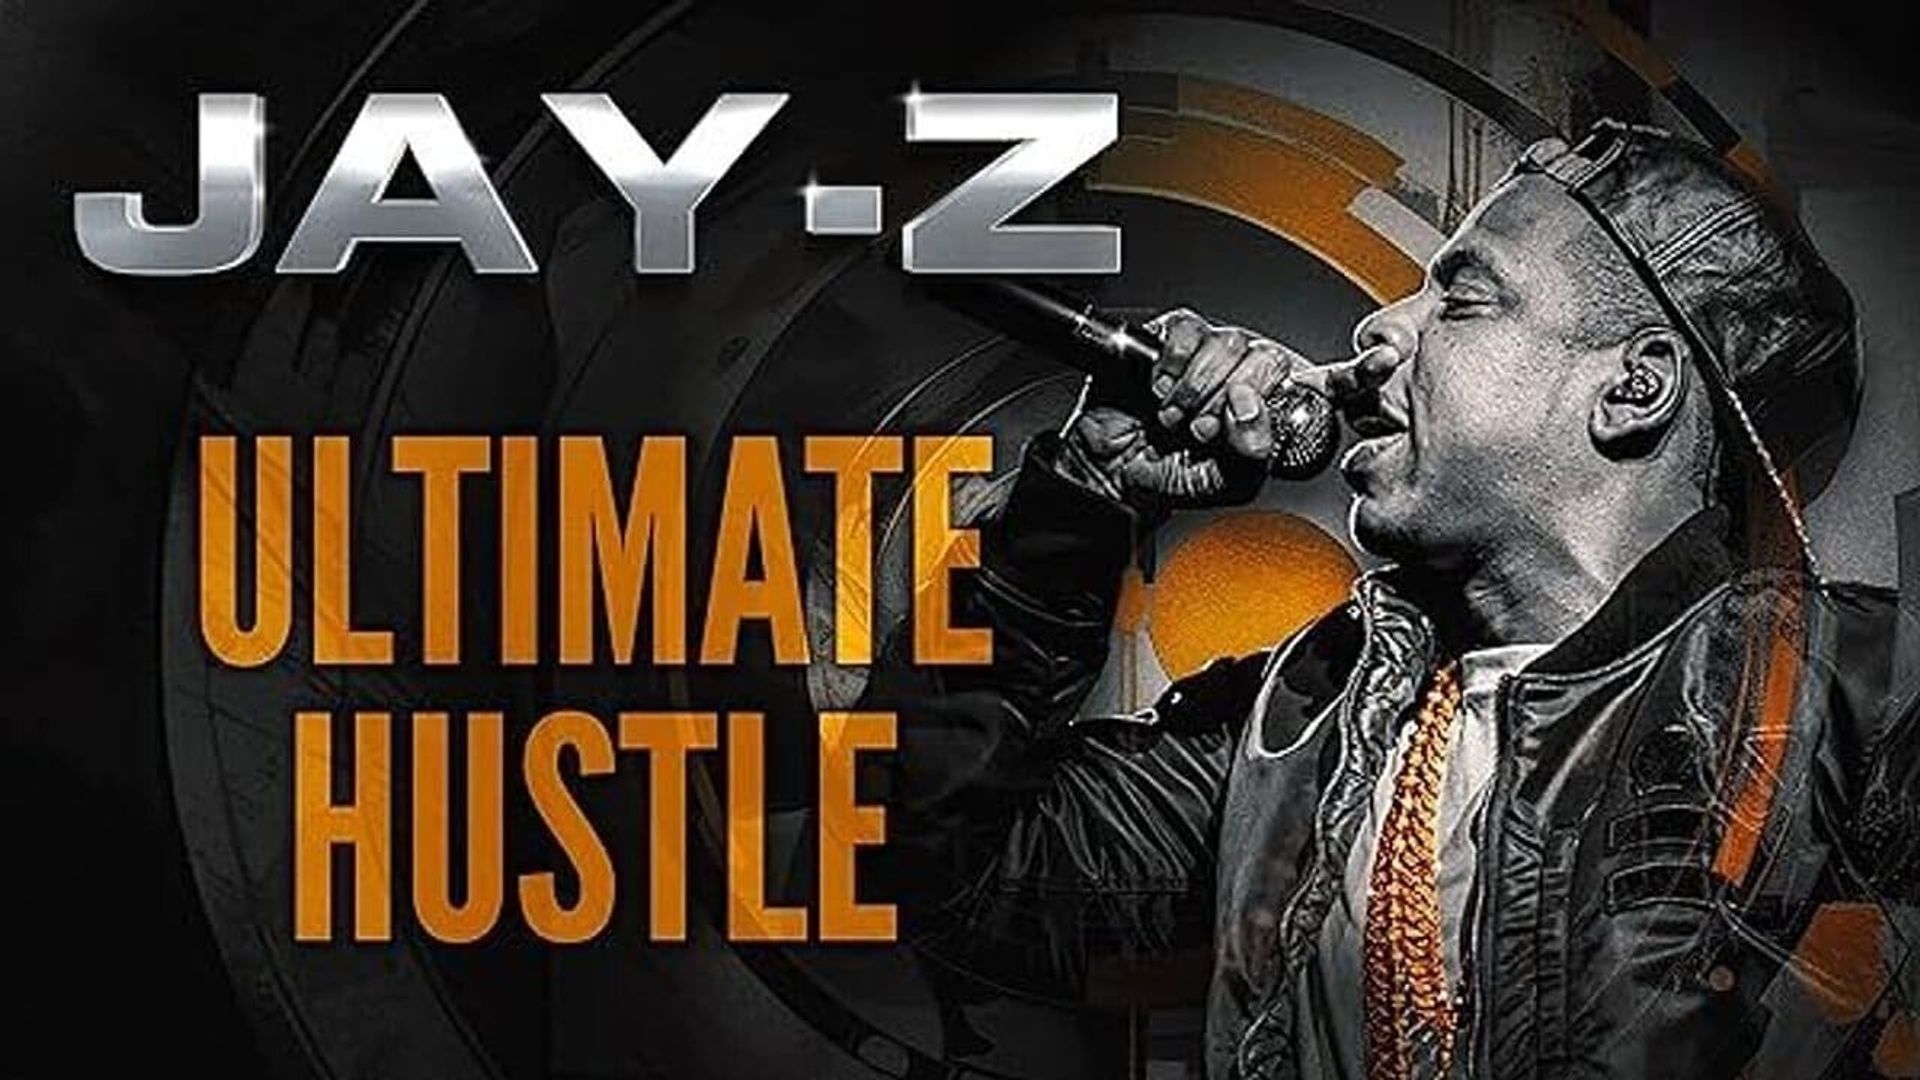 Jay-Z: Ultimate Hustle background